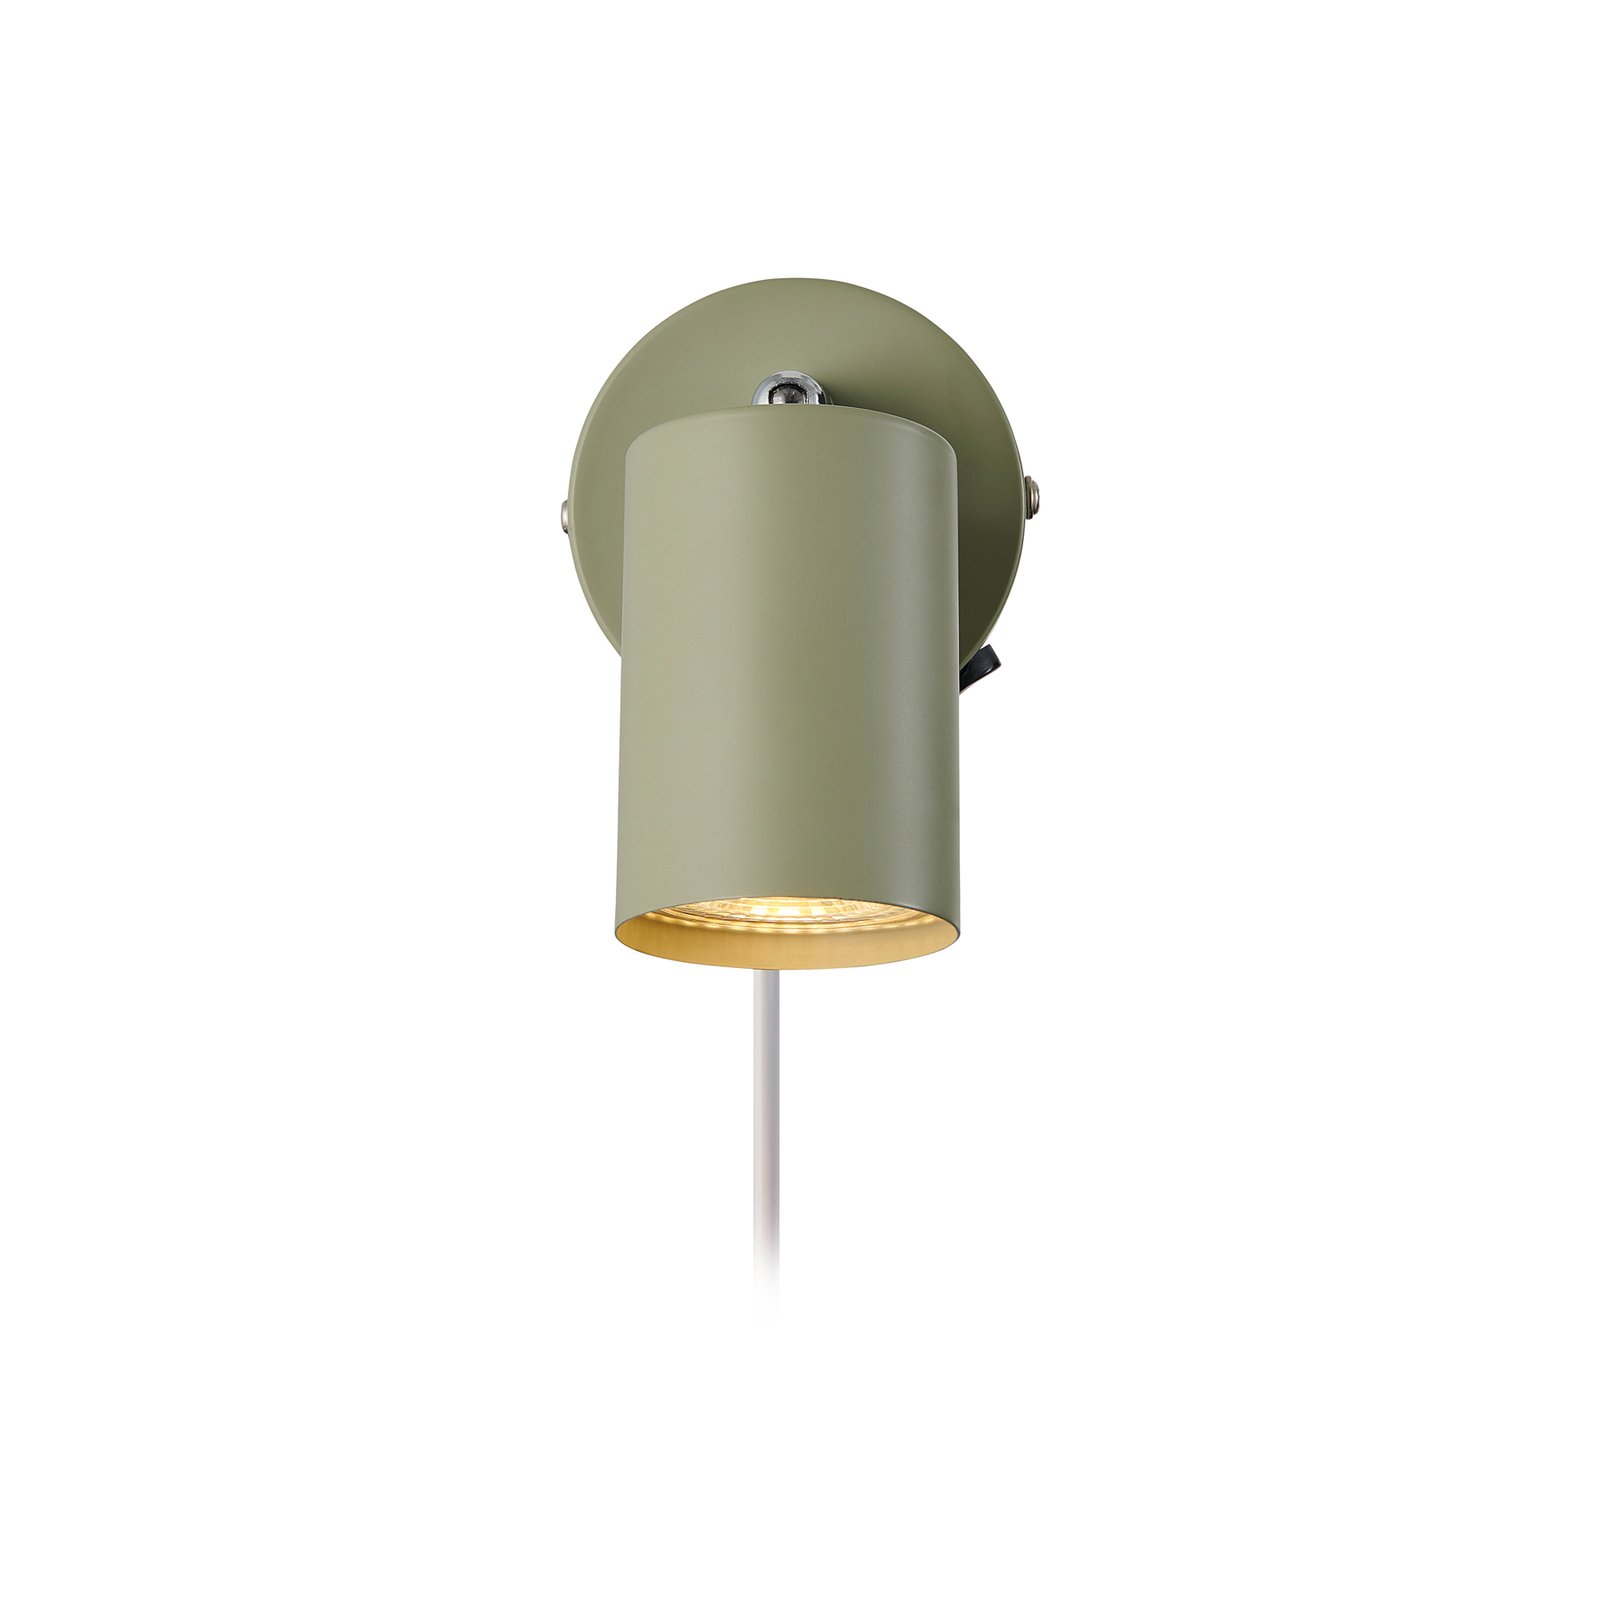 Explore väggspotlight med kabel och stickpropp, GU10, grön